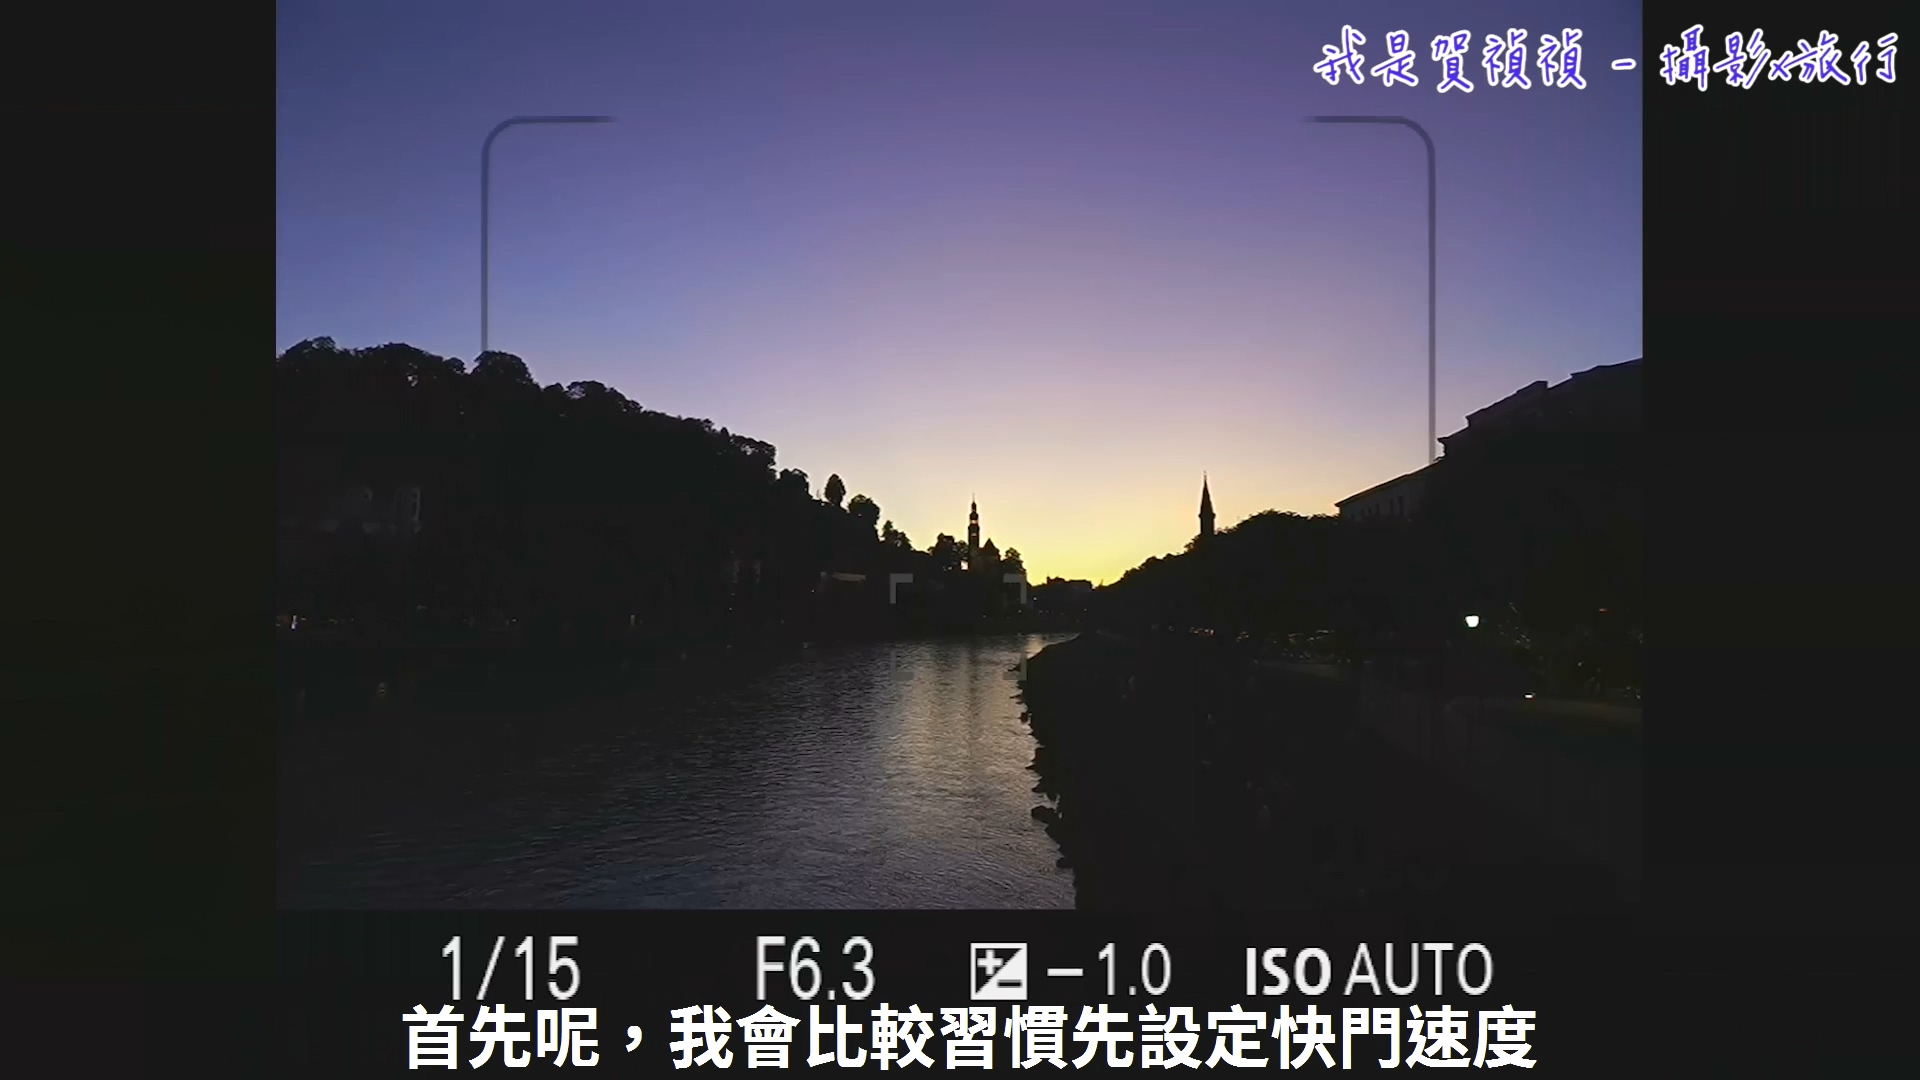 [用攝影119] 手持相機拍攝夜景基本概念 - 快門與感光度的搭配選擇